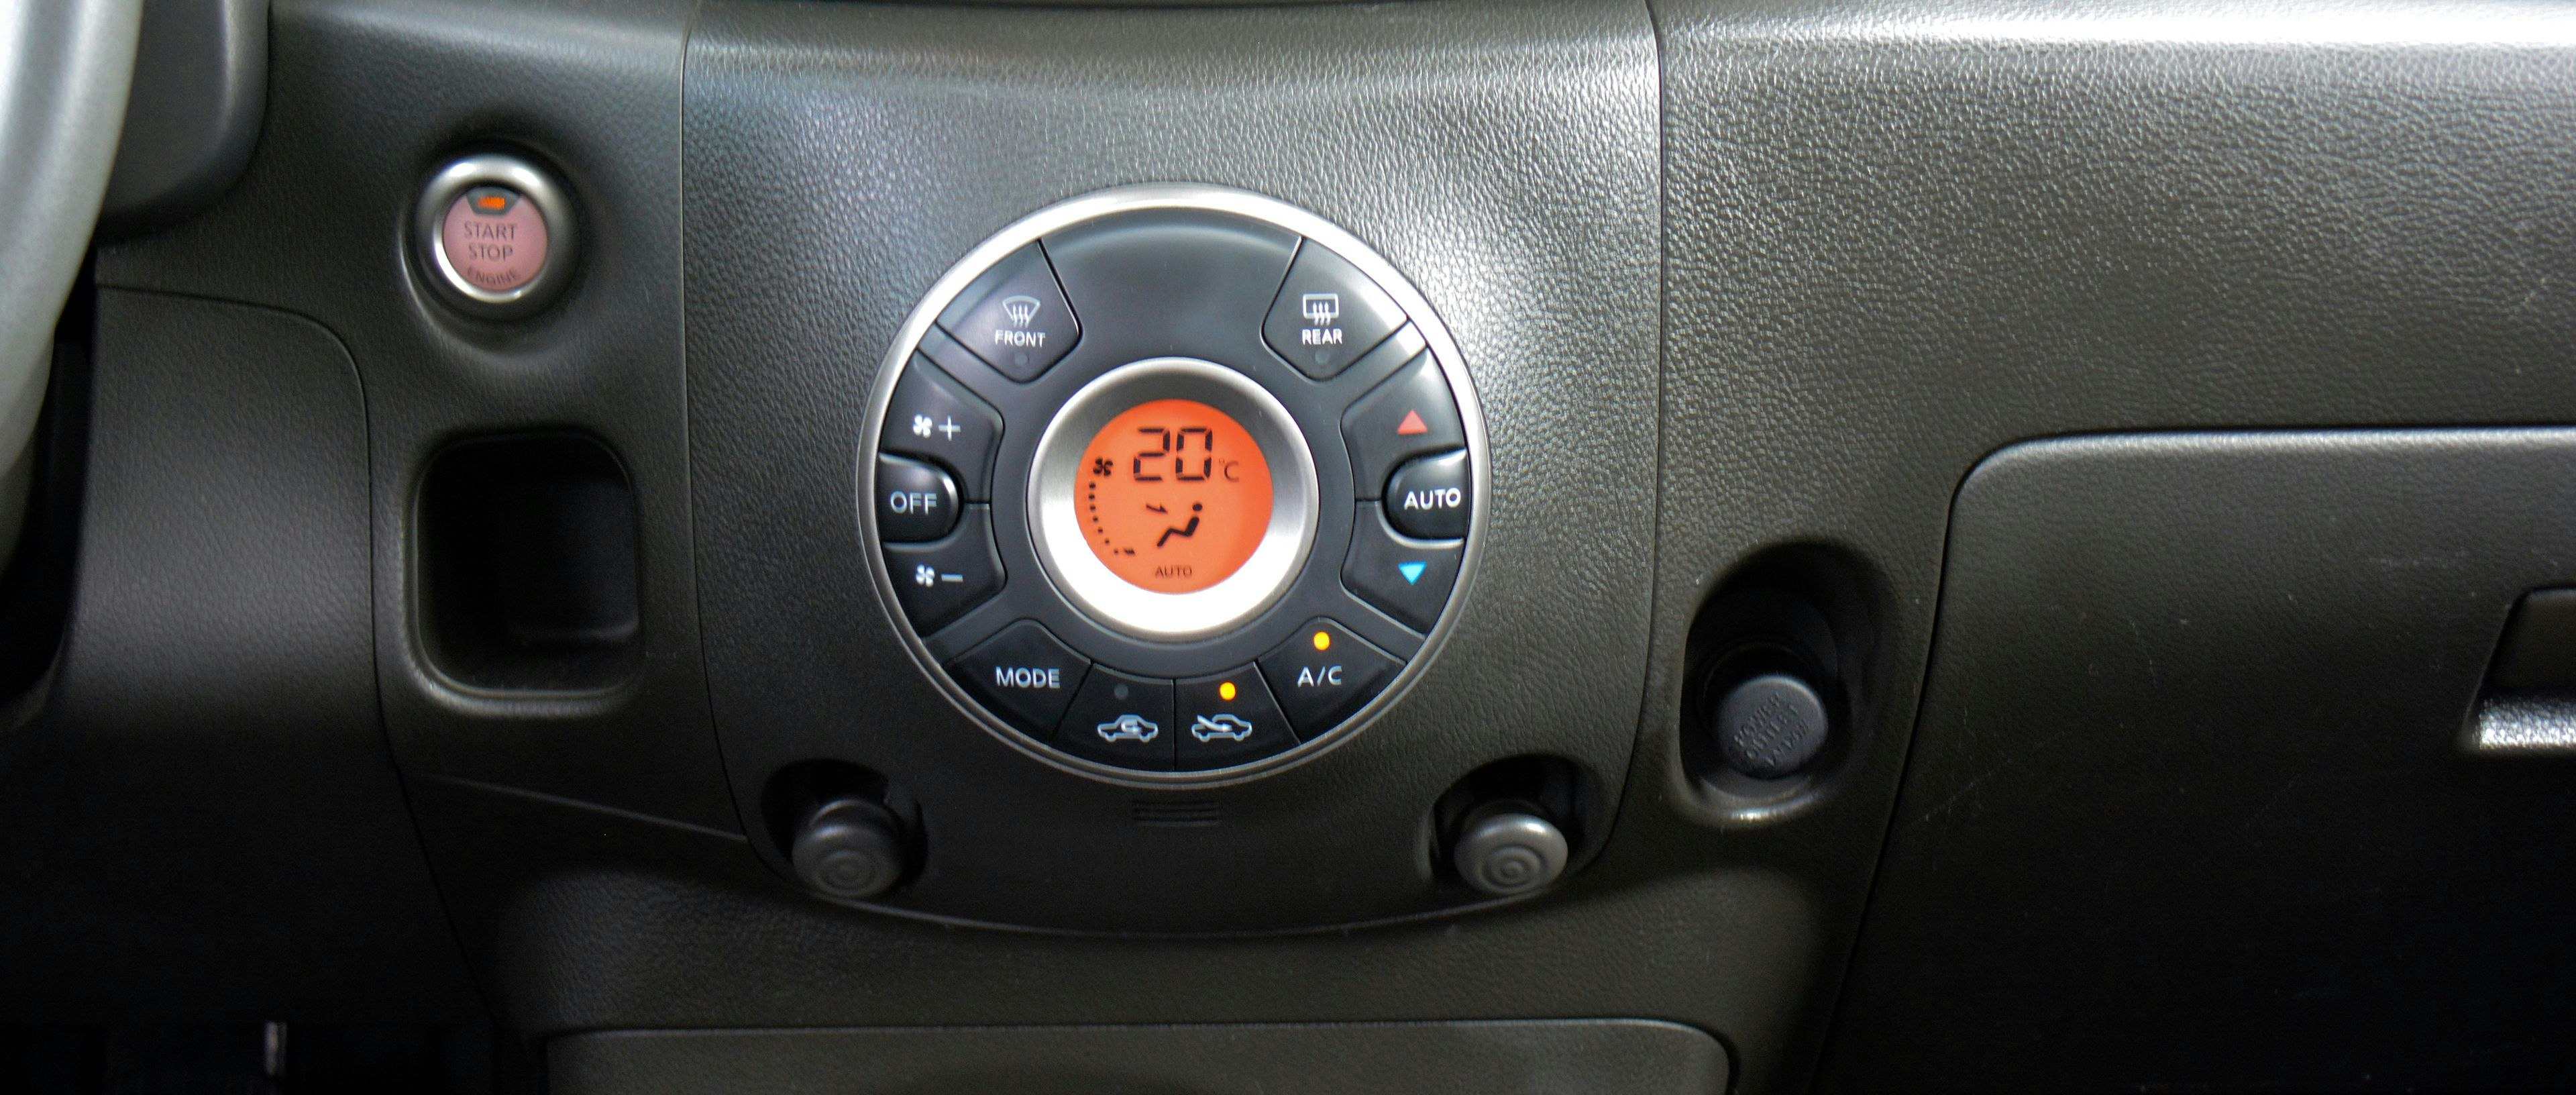 Comment bien entretenir la climatisation de sa voiture ?